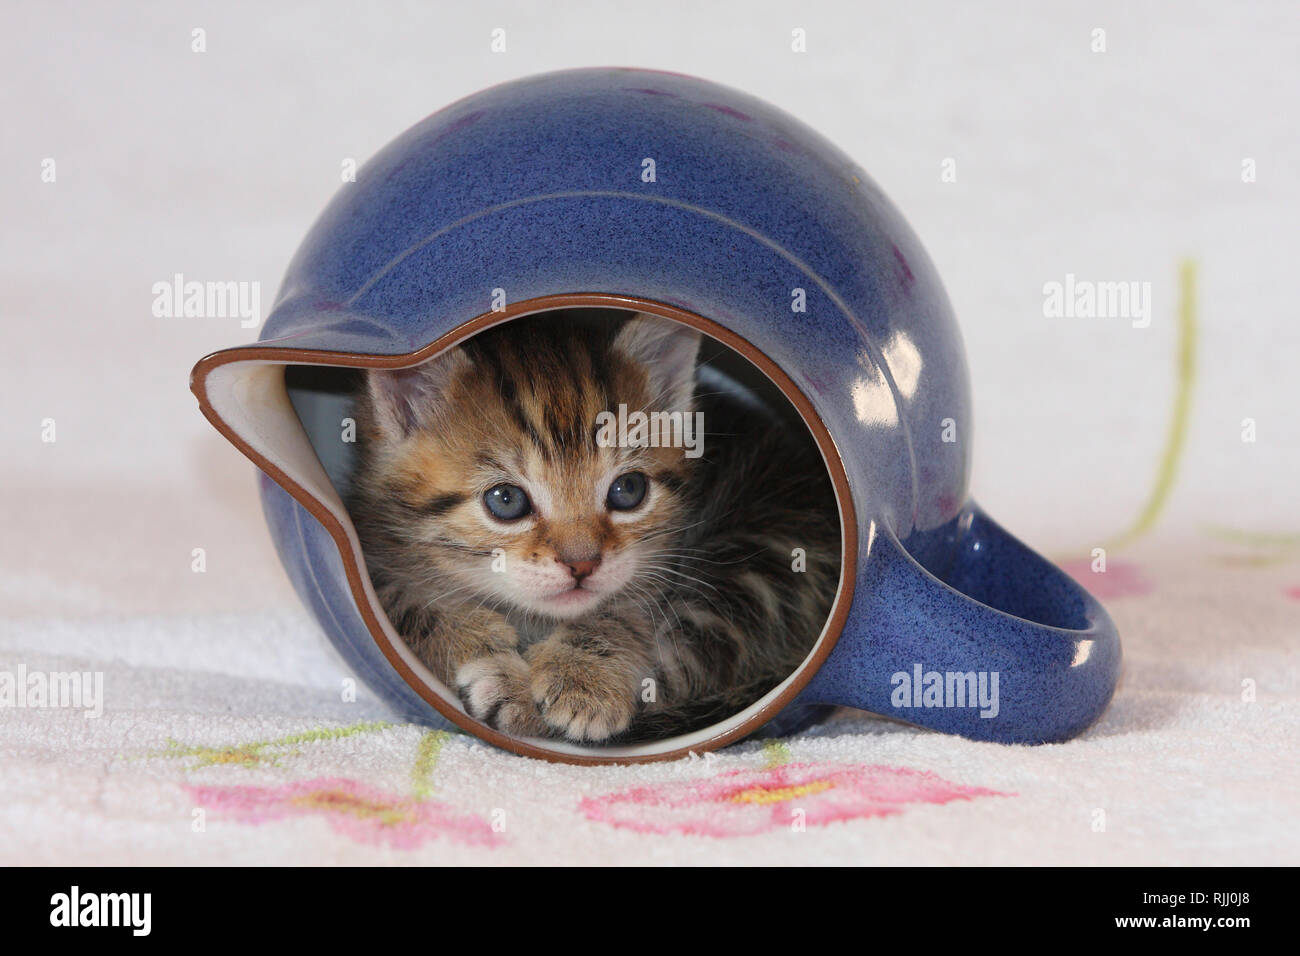 Gato doméstico. Gatito en una jarra. Alemania Foto de stock